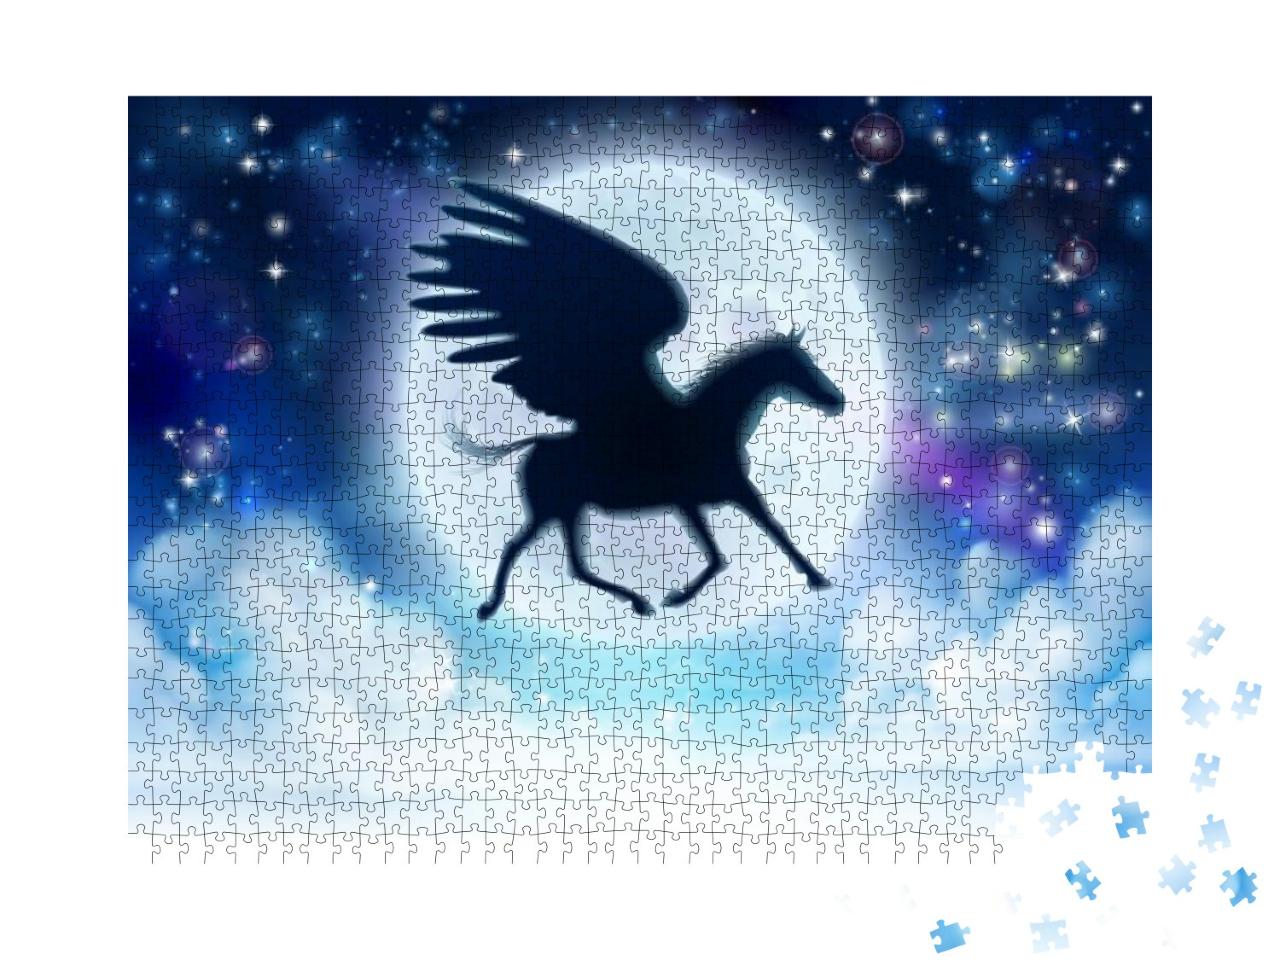 Puzzle 1000 Teile „Pegasus als Silhouette vor dem weißen Vollmond“